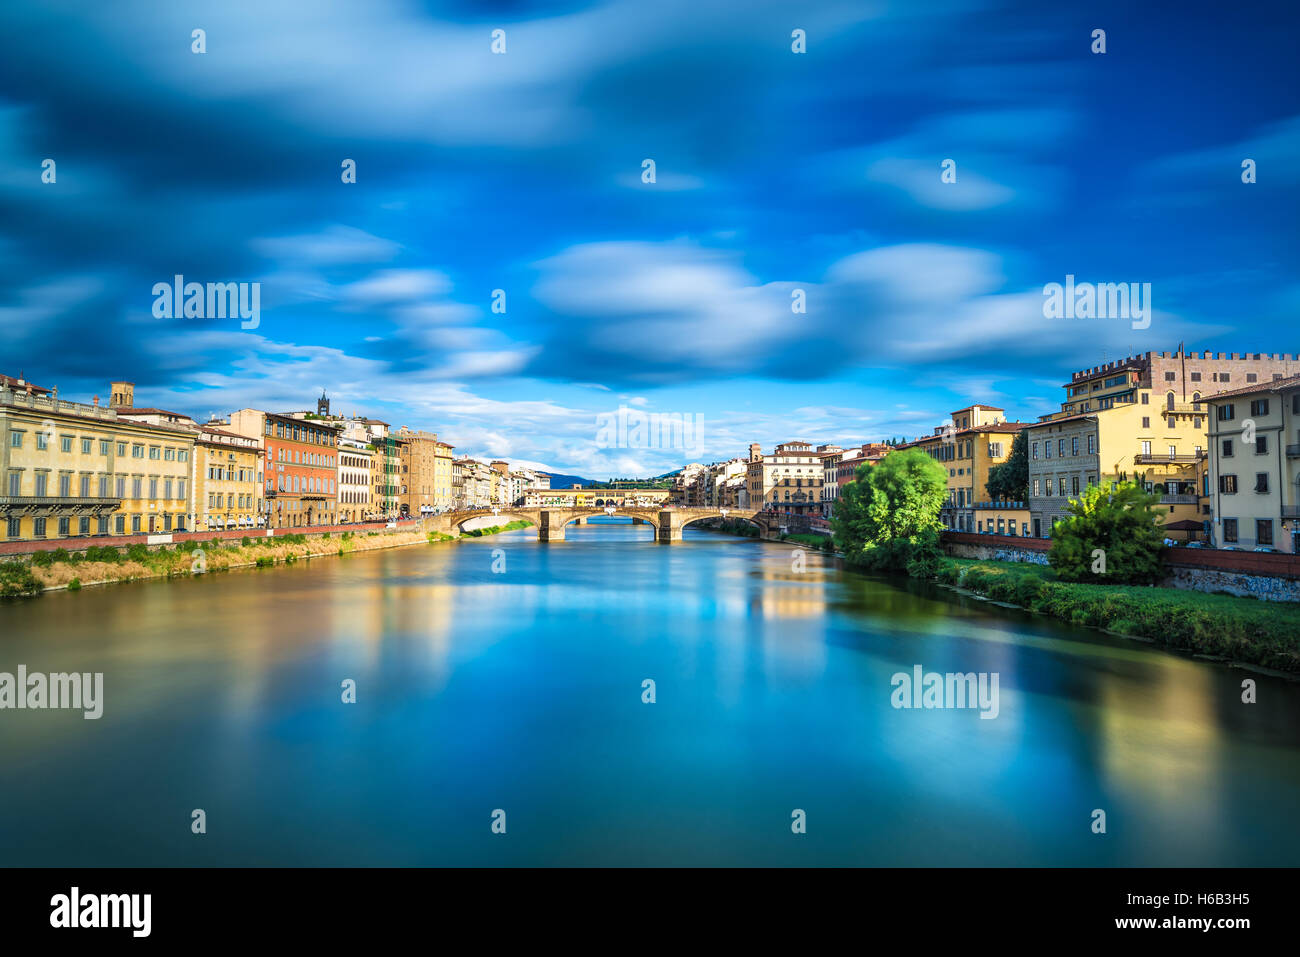 Florenz oder Firenze, Santa Trinita und alte Brücke Wahrzeichen am Fluss Arno, Sonnenuntergang Landschaft mit Reflexion. Toskana, Italien. Stockfoto